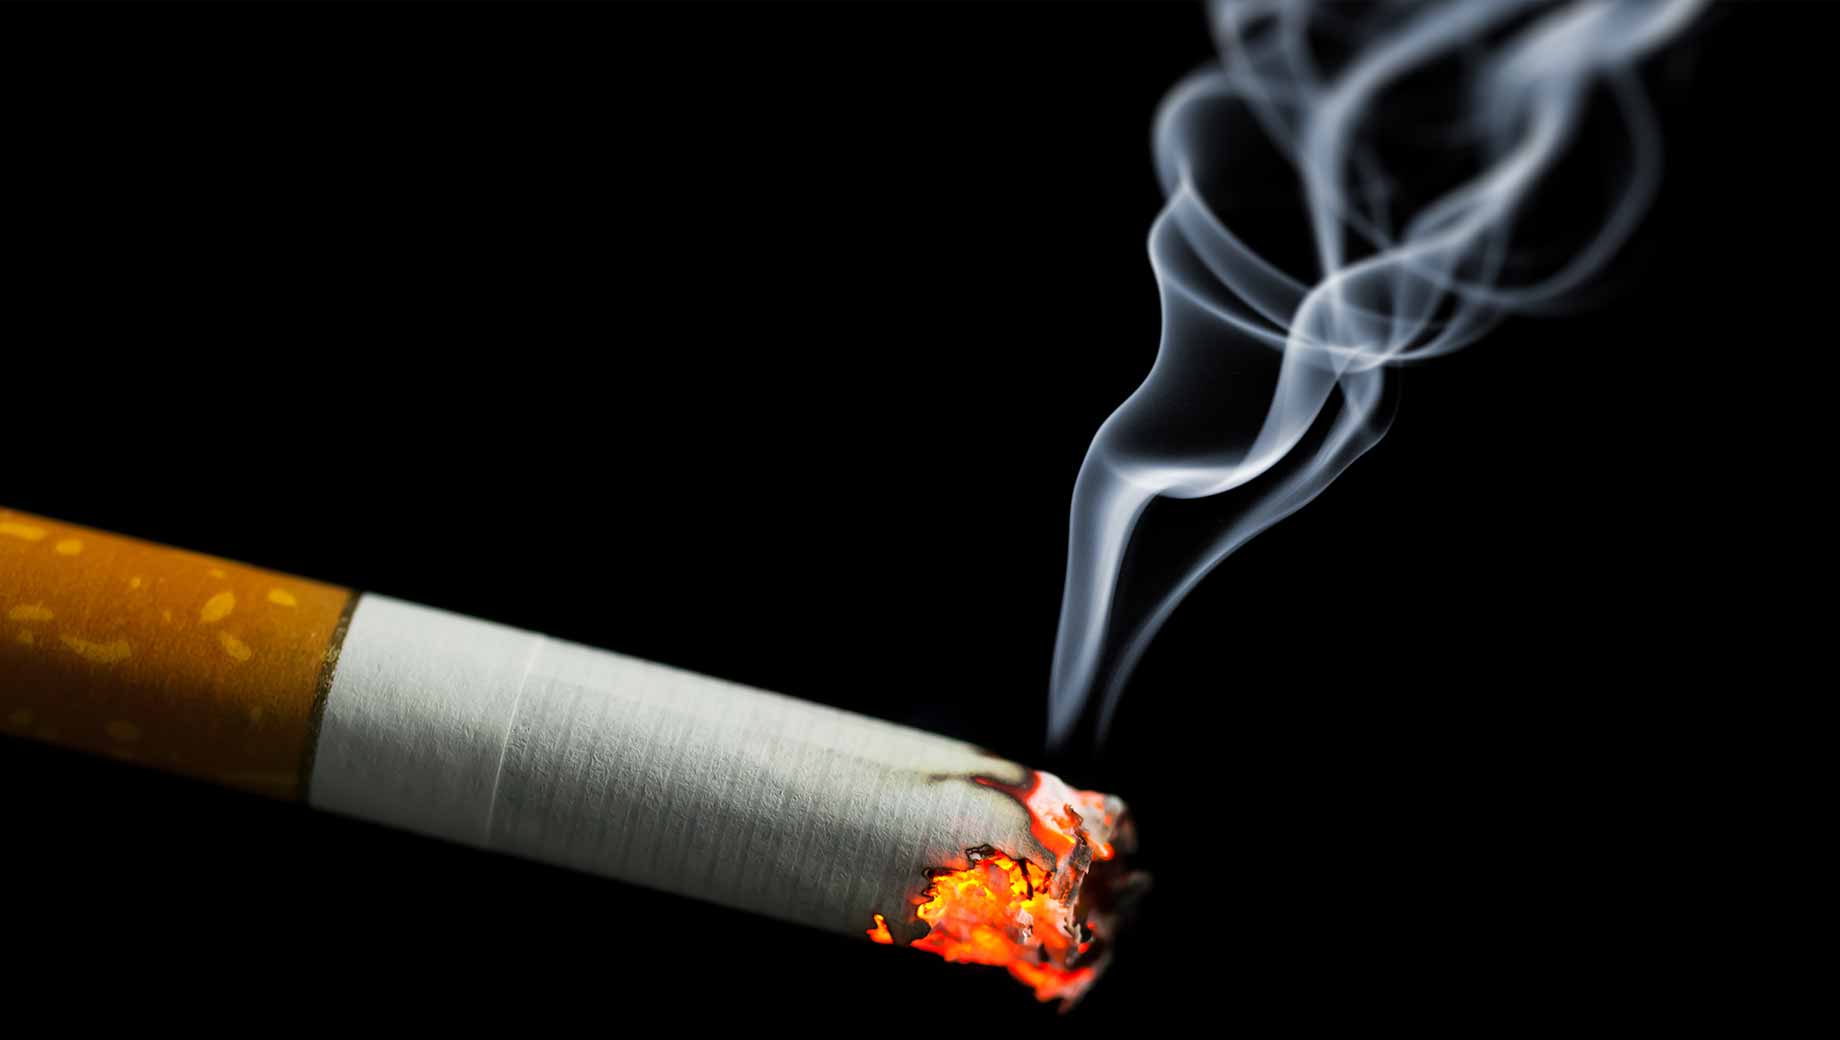 Ketahui Berbagai Kandungan Berbahaya dalam Rokok, Ada Arsenik sampai Sianida